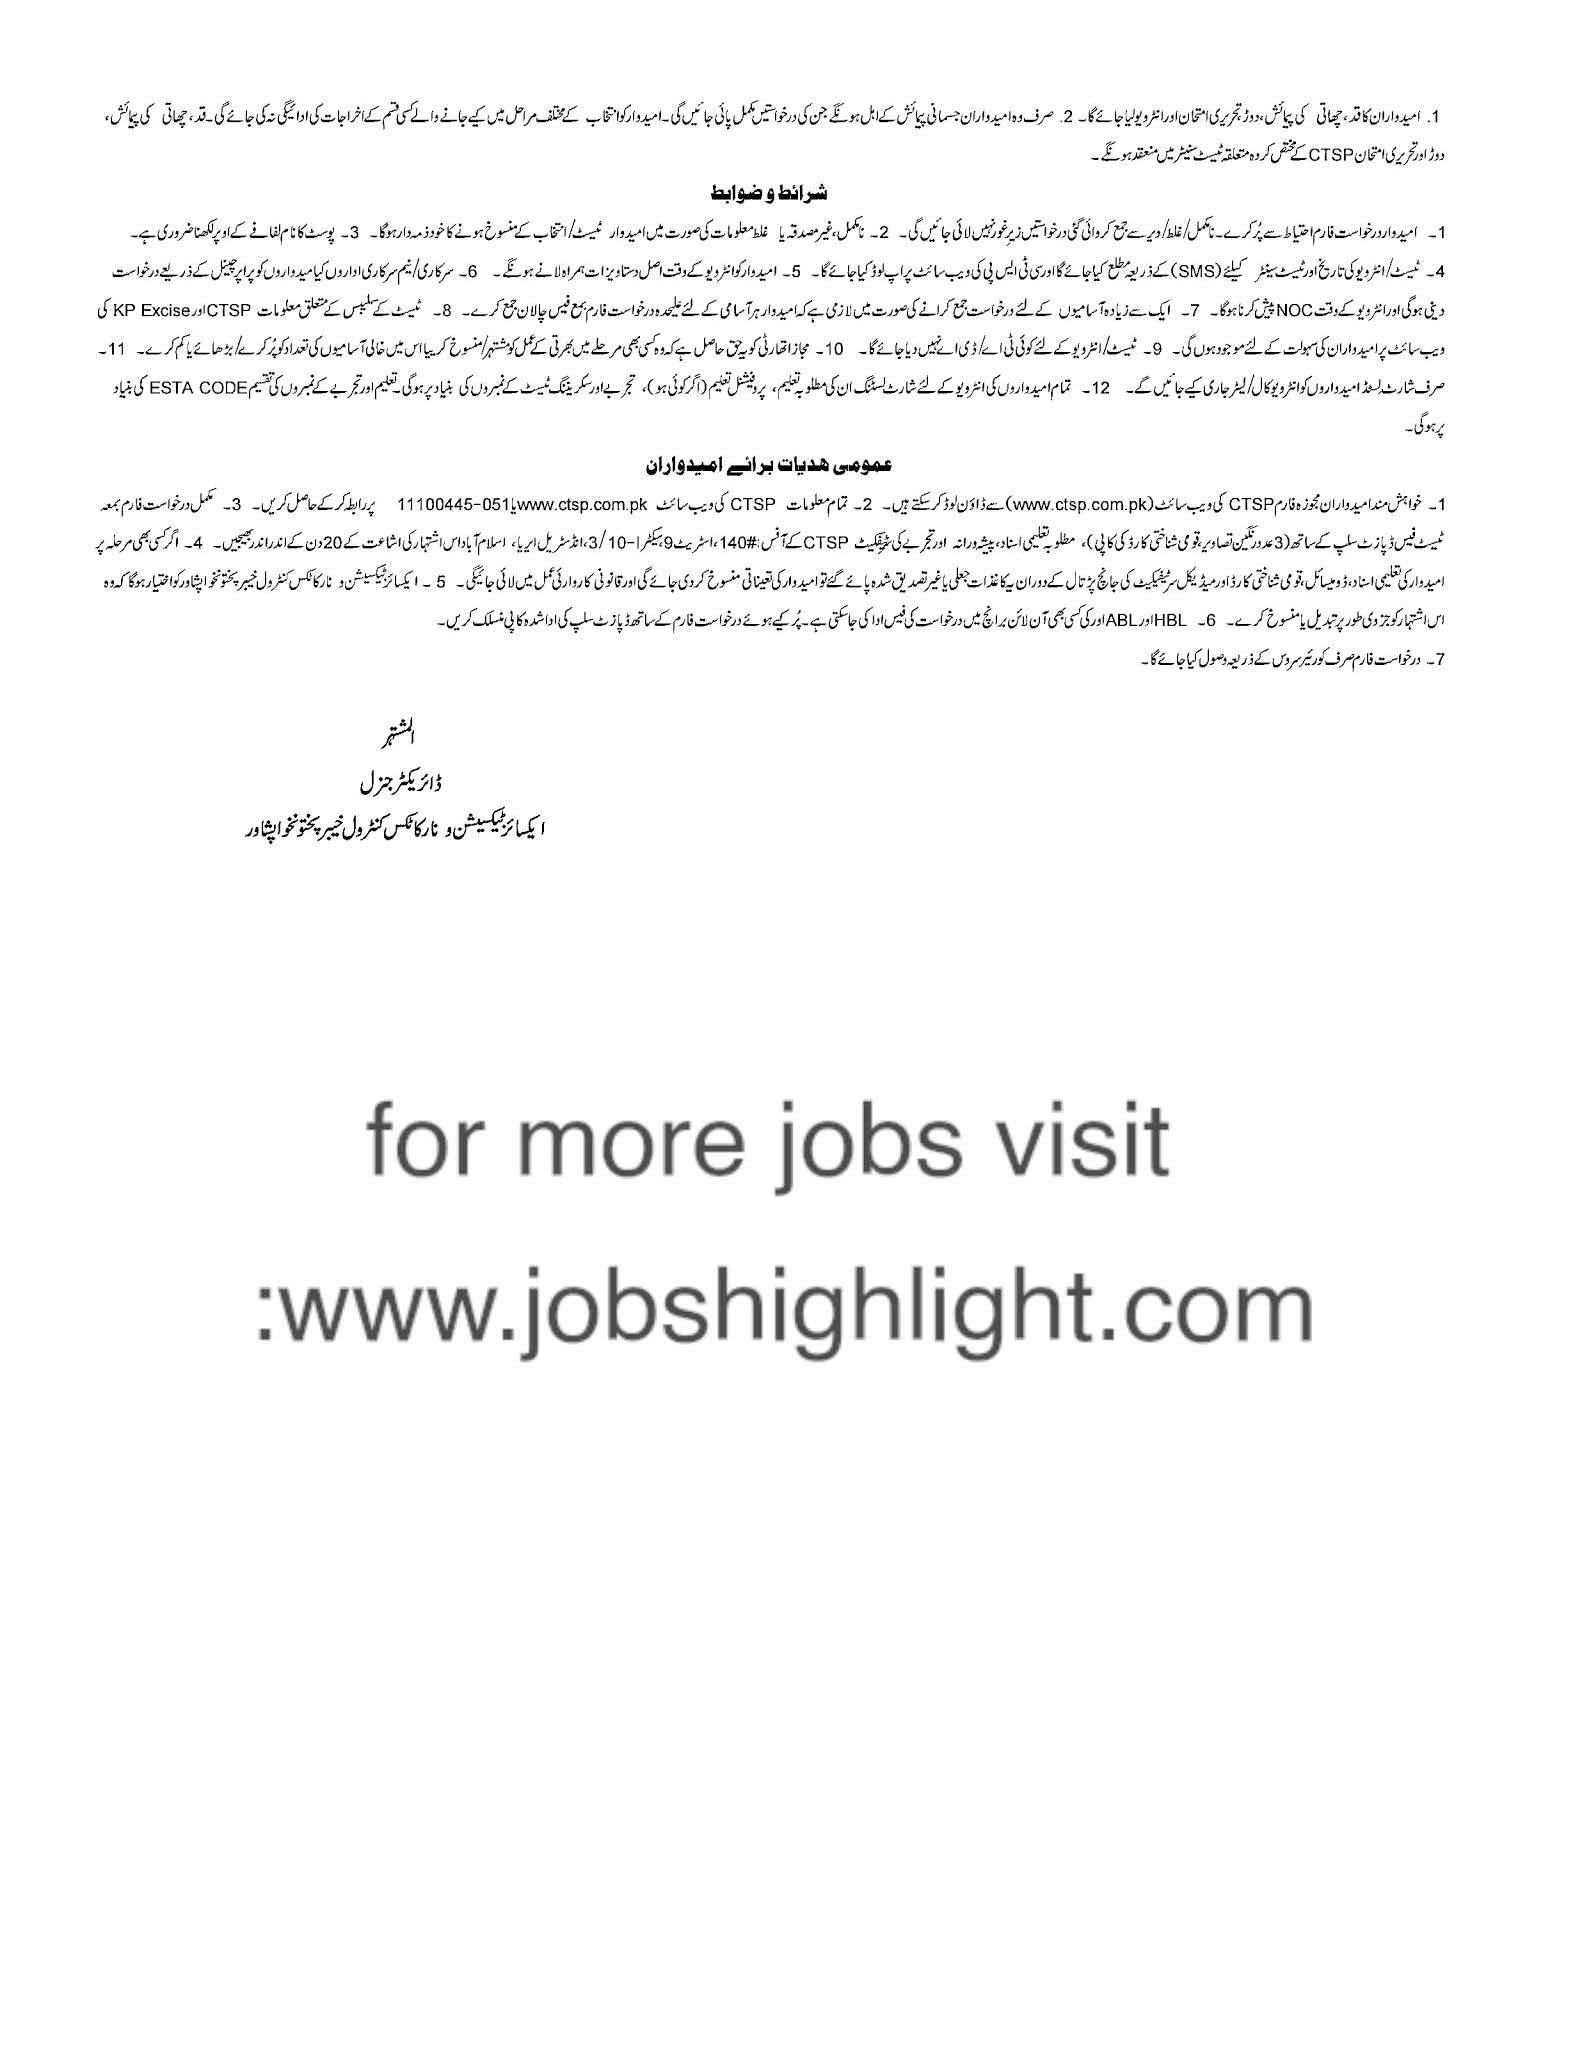 excise jobs 2021 advertisement